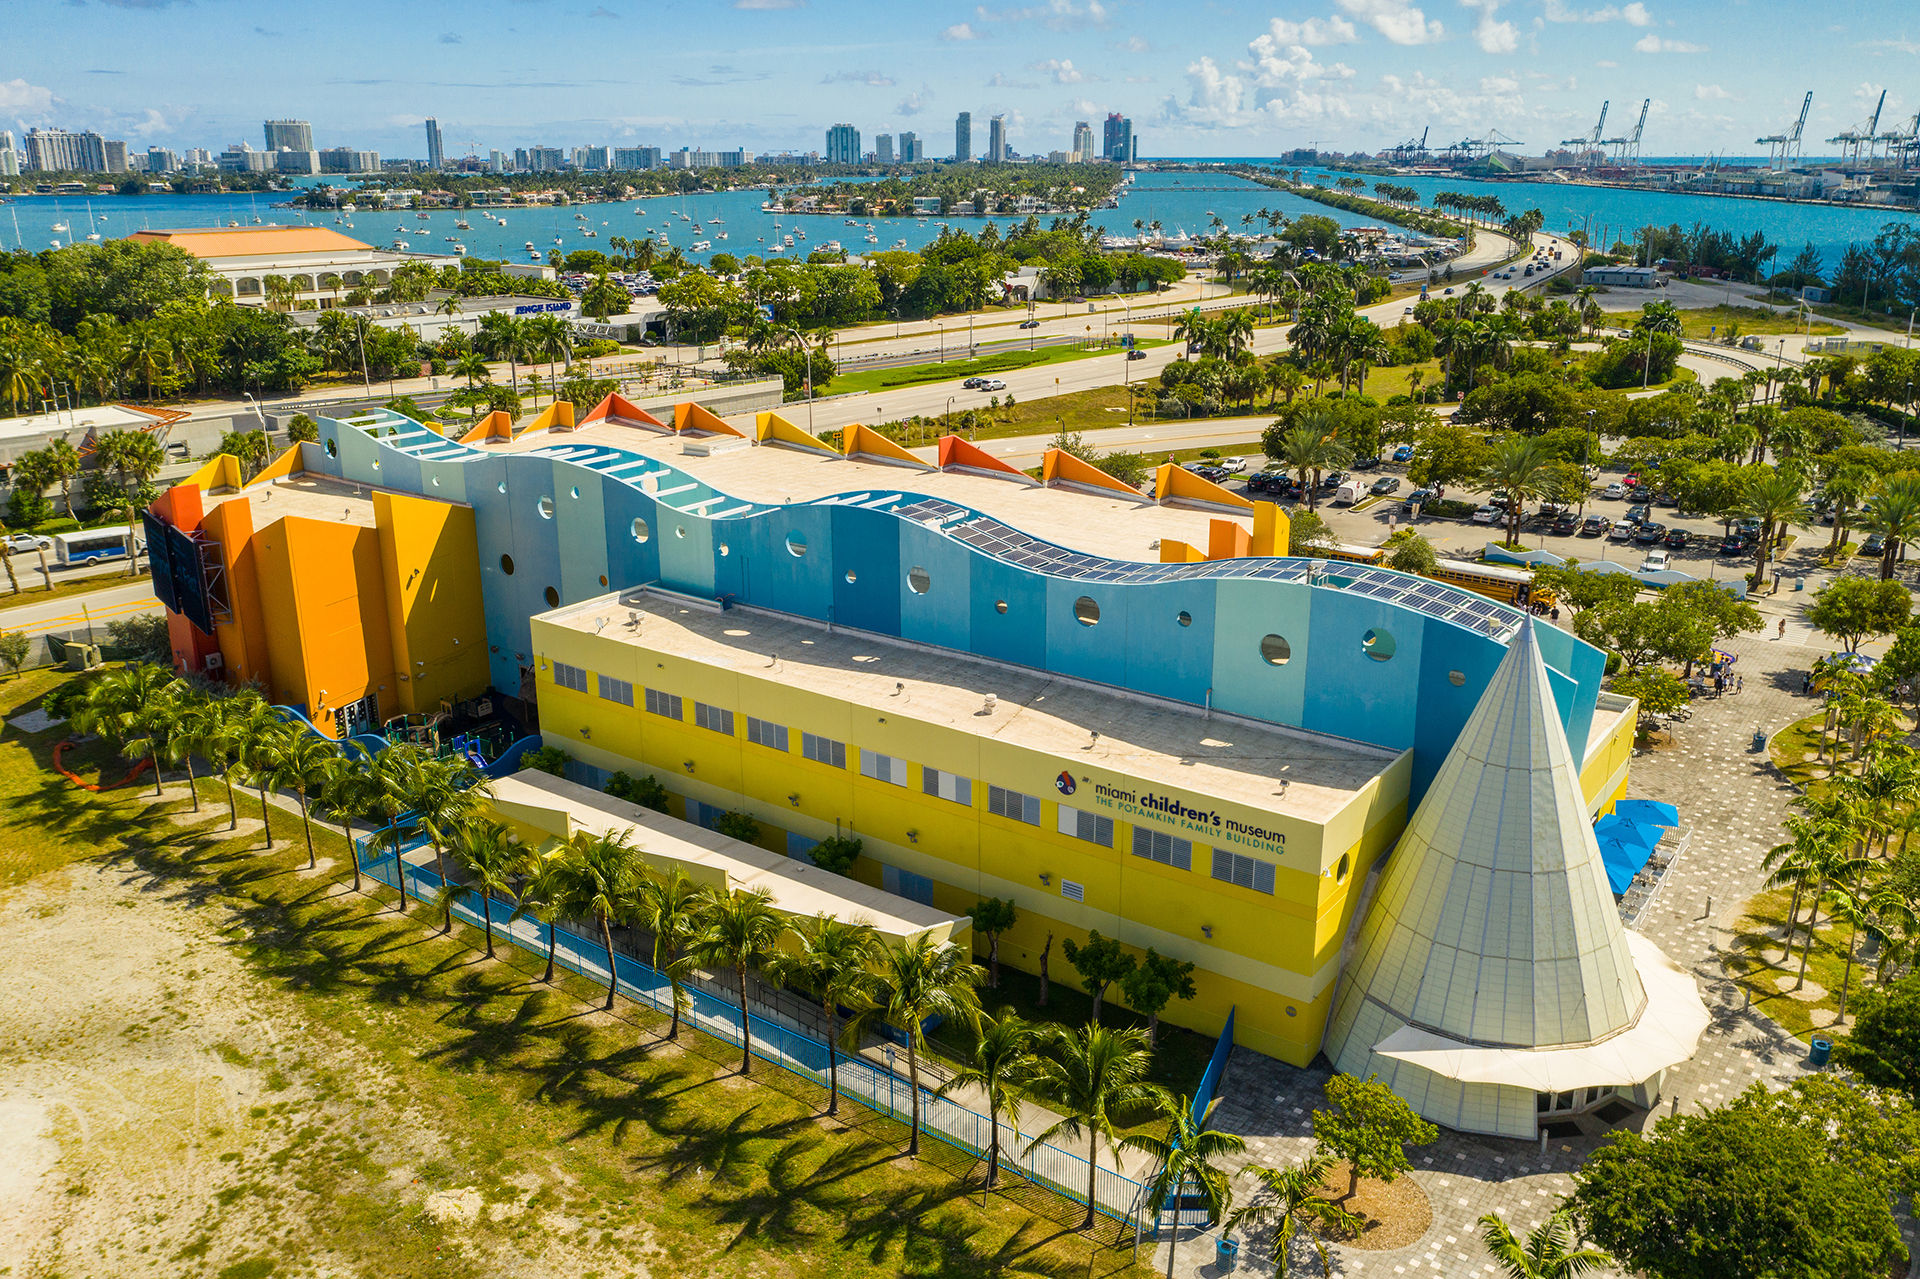 Miami Children's Museum